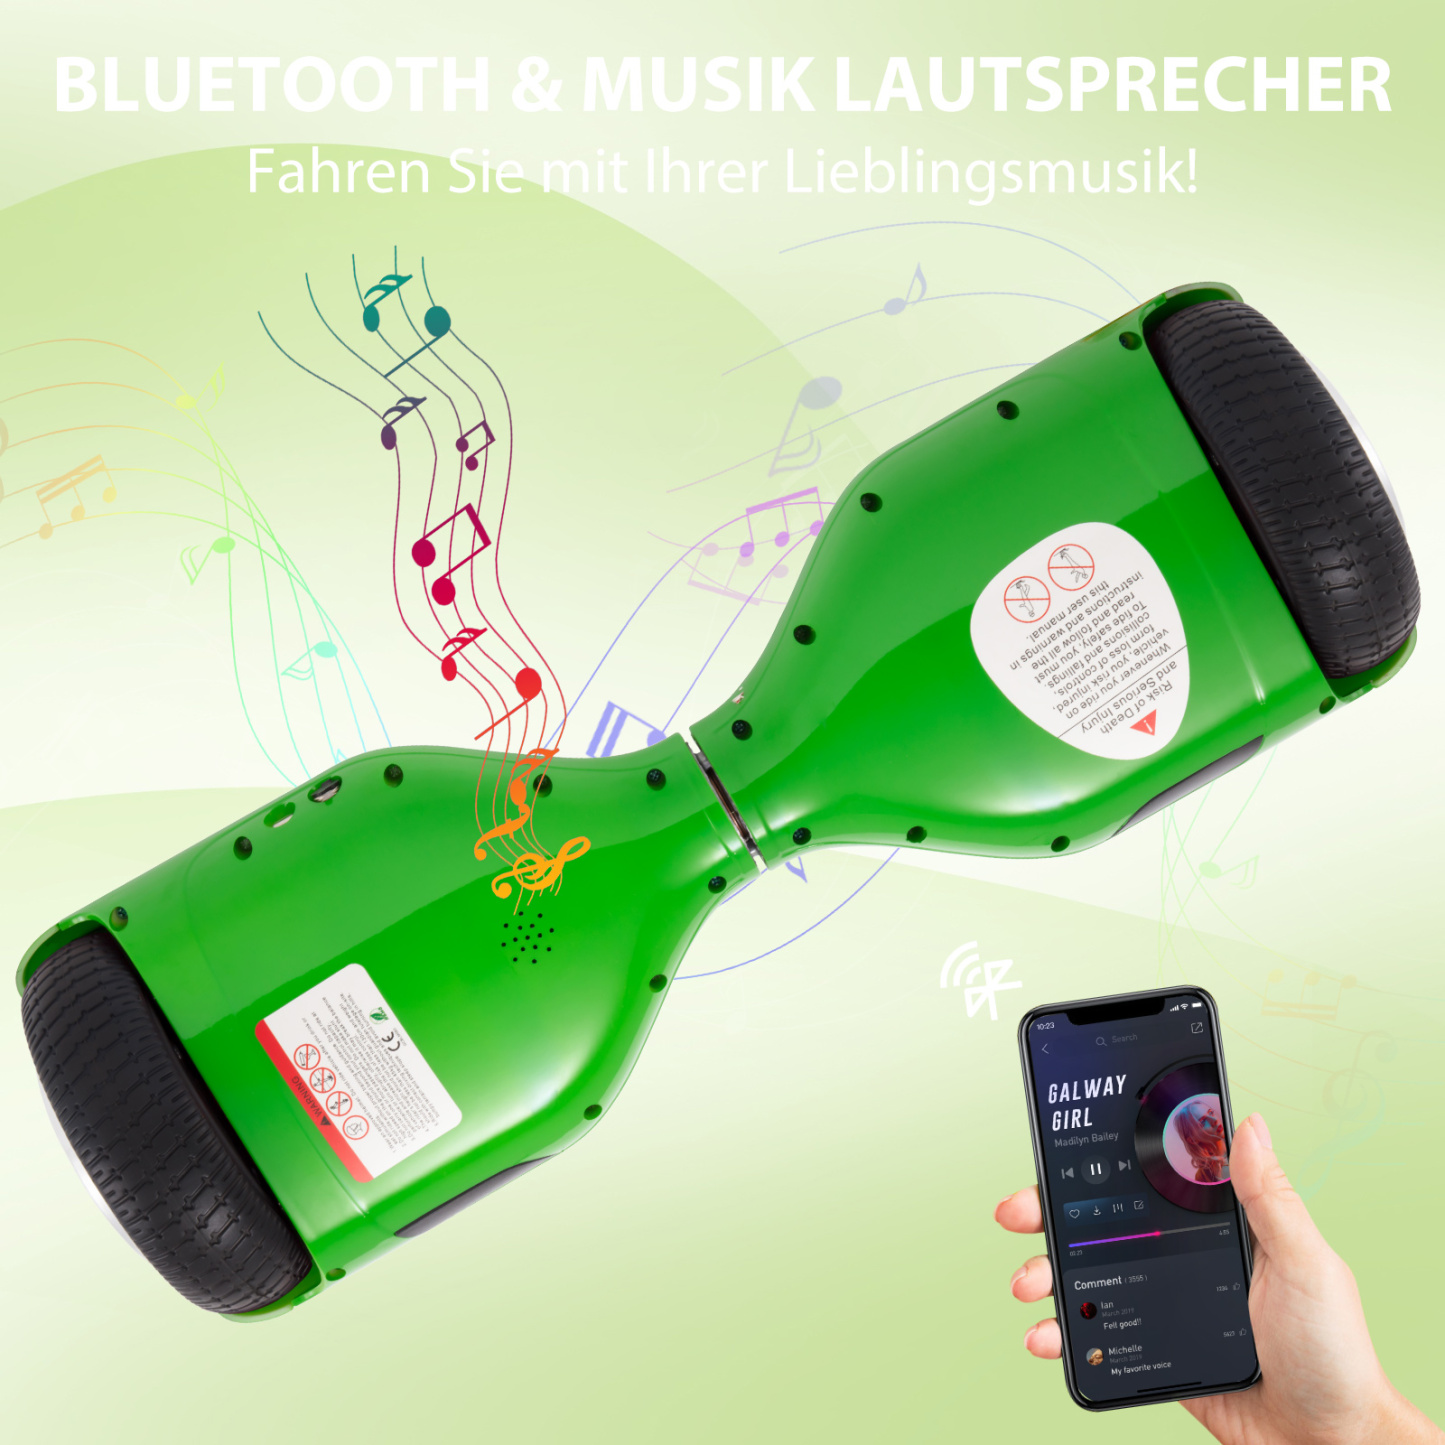 Neues 6,5" grünes Hoverboard für Kinder, mit Bluetooth Musik Lautsprecher und Disco LED Licht - 500W 12km/h